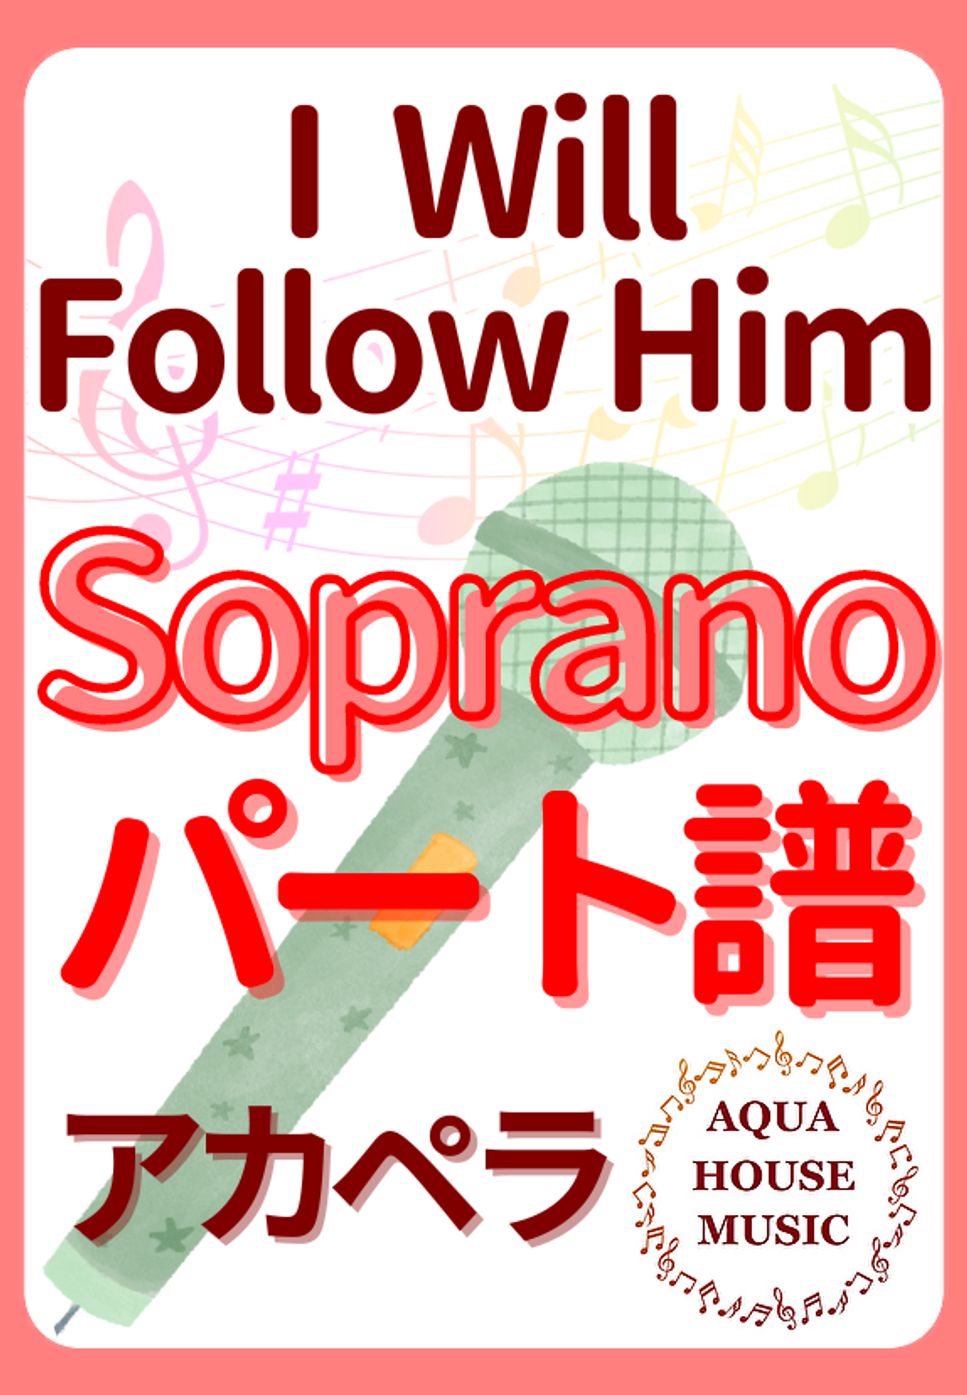 映画『天使にラブソングを』 - I Will Follow Him (アカペラ楽譜♪Sopranoパート譜) by 飯田 亜紗子